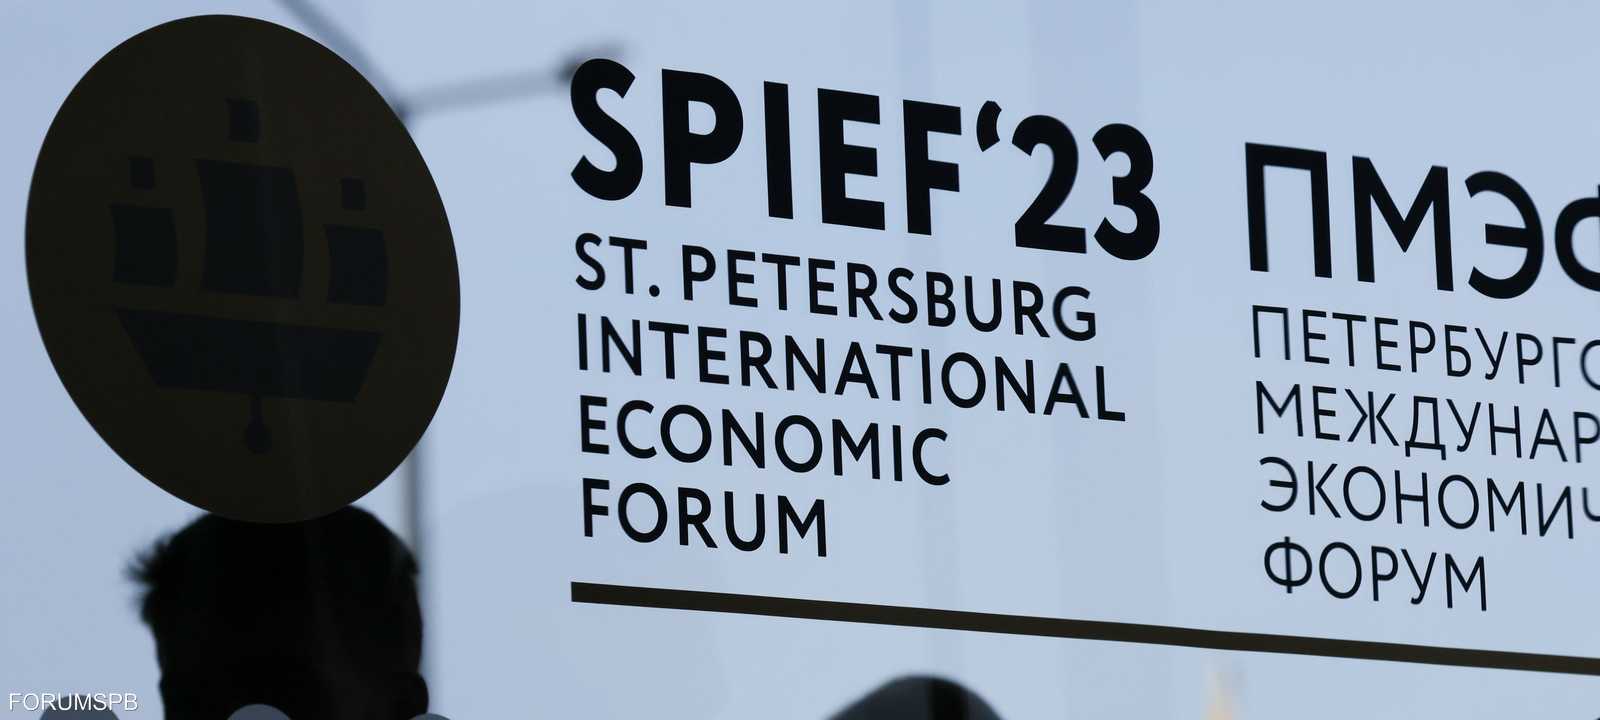 انطلاق فعاليات المنتدى الاقتصادي الدولي بسان بطرسبورغ